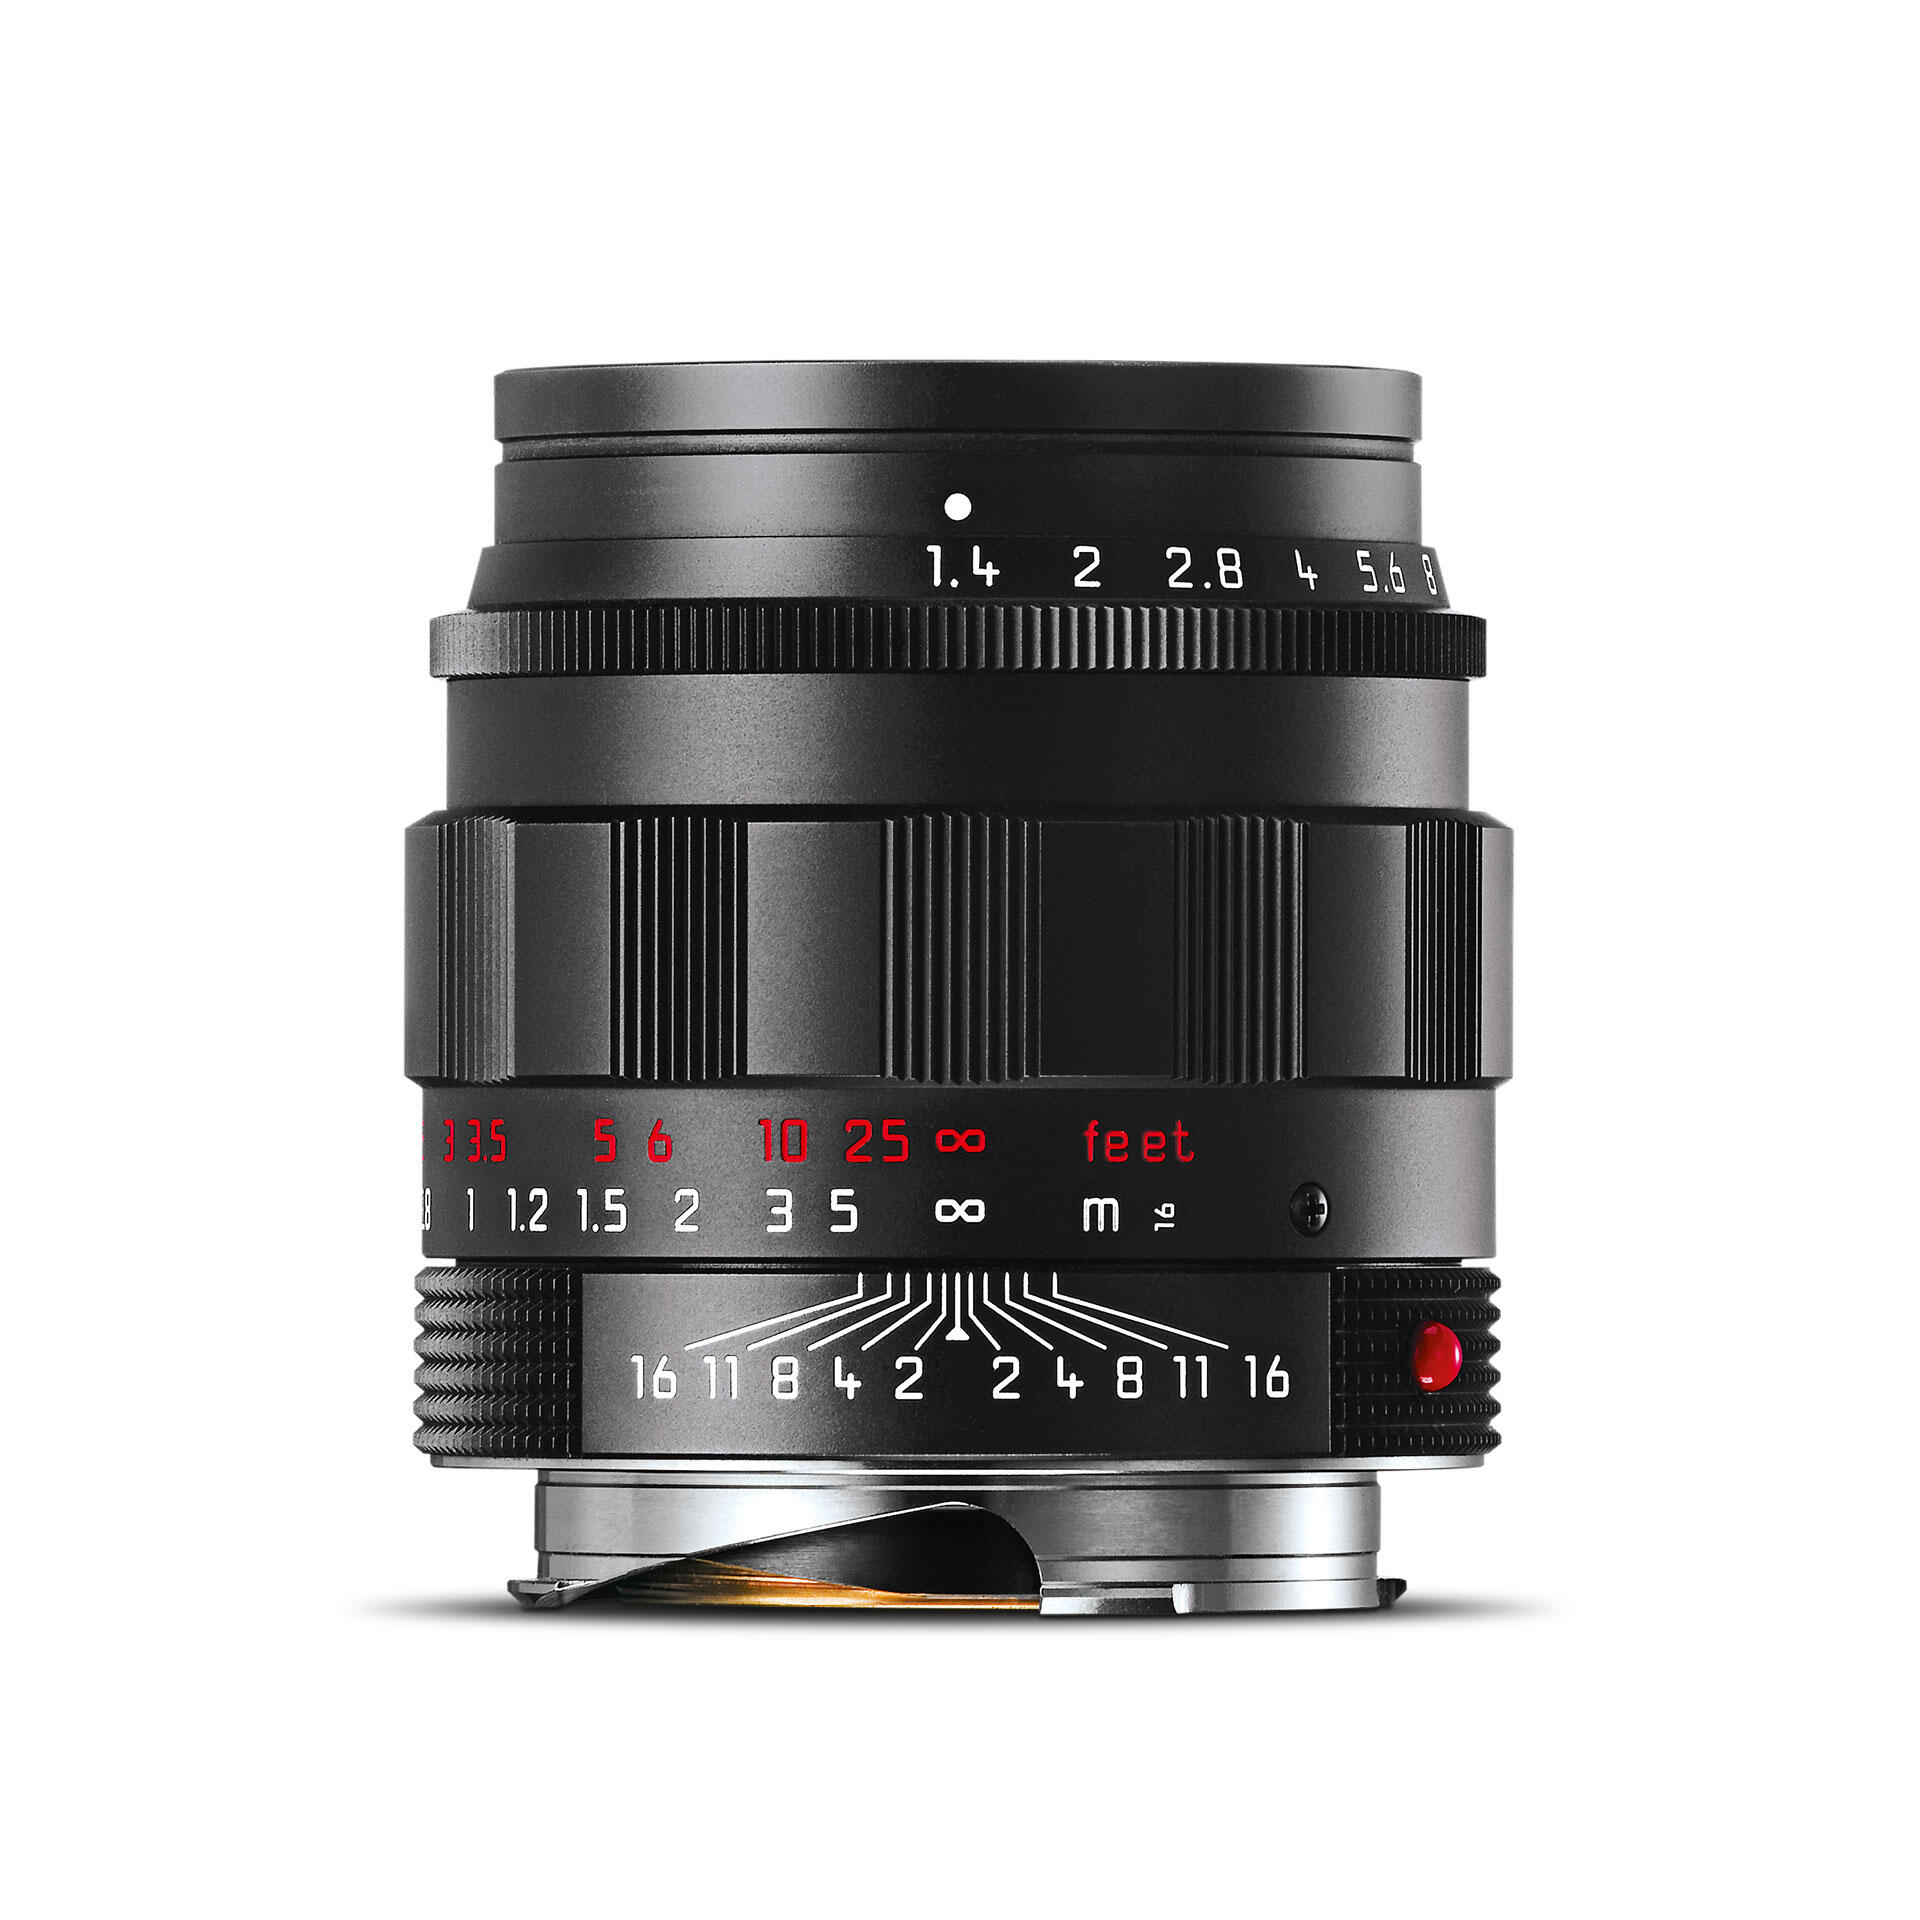 Leica Summilux-M 50 f/1.4 ASPH., black chrome finish 11688 | Leica